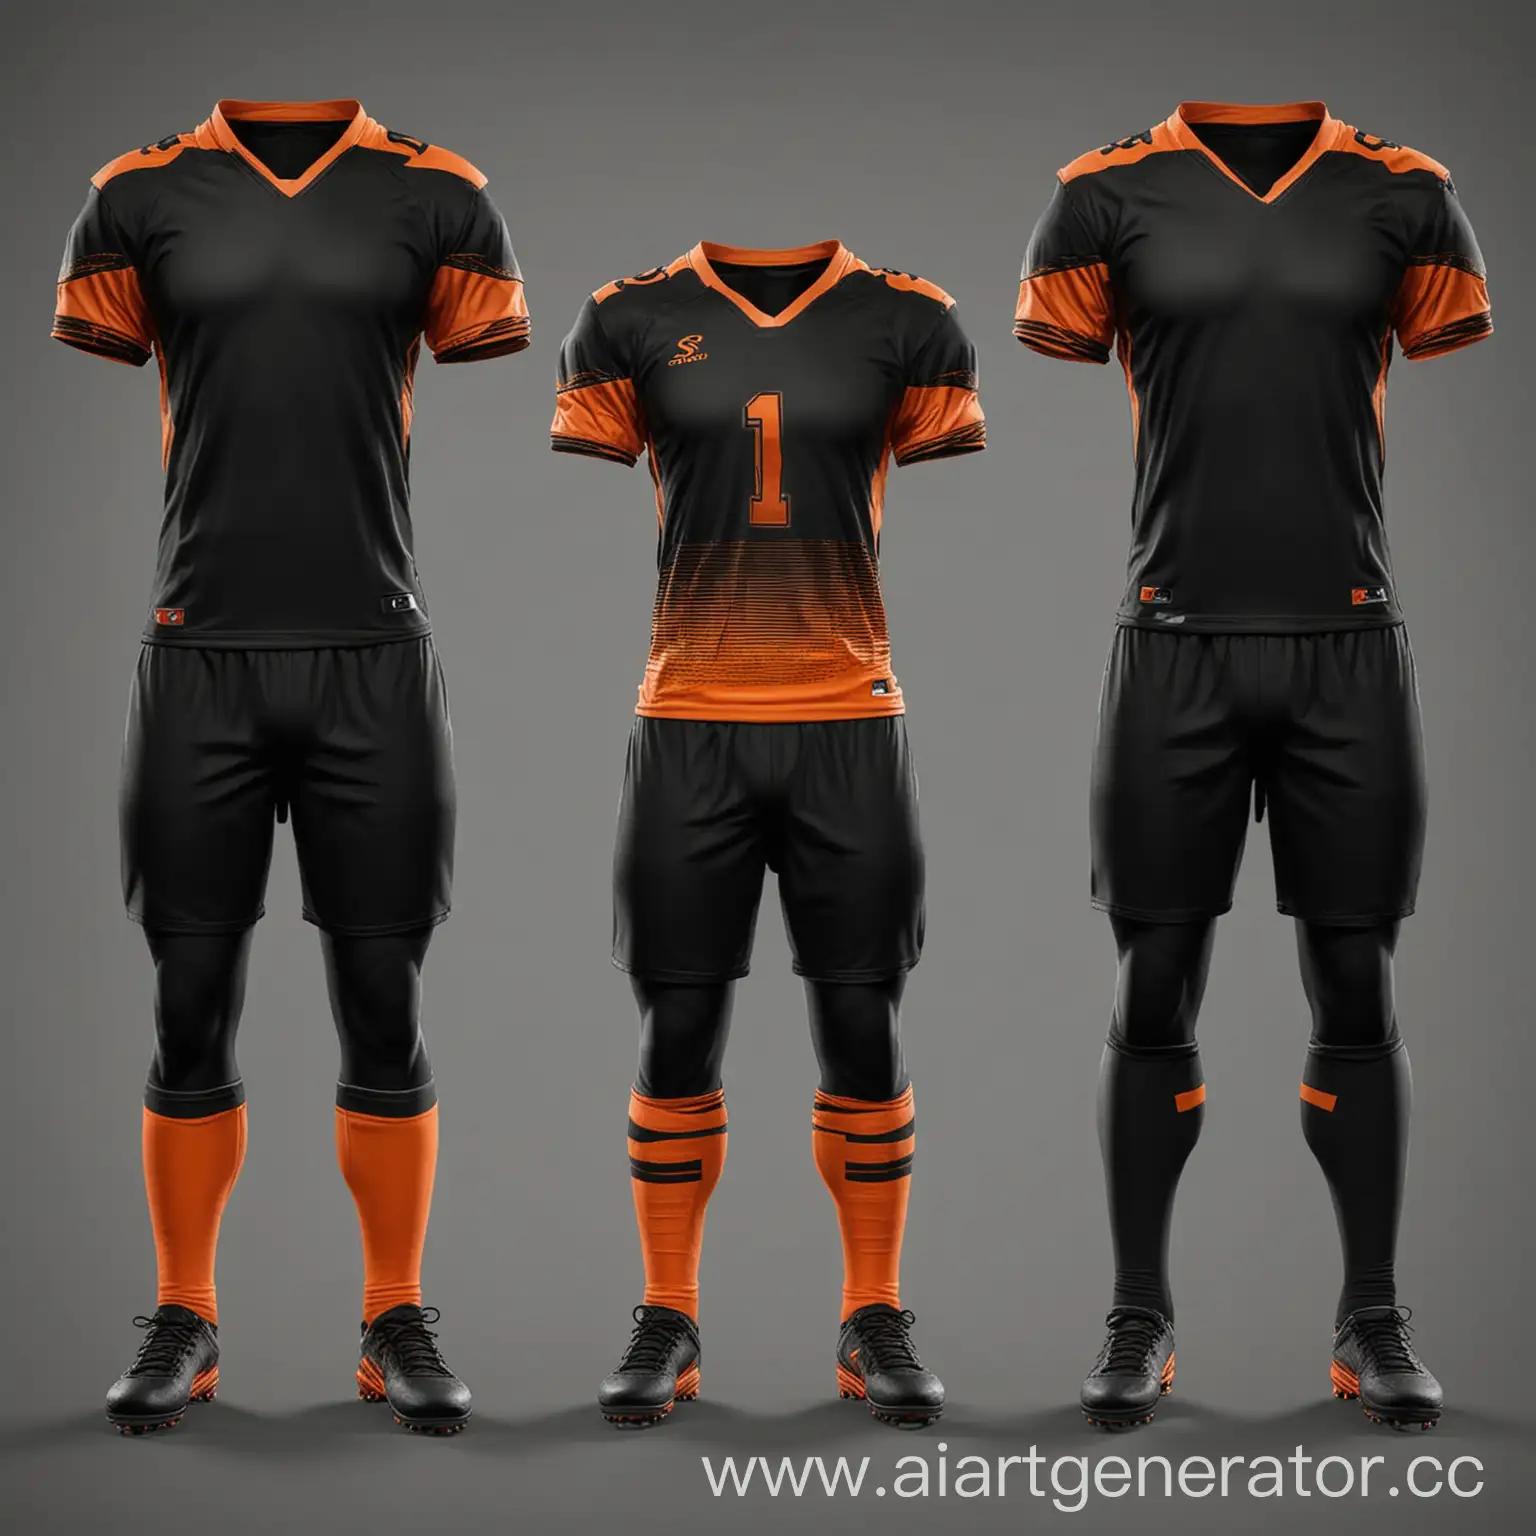 Three-Varieties-of-Football-Uniforms-in-Black-and-Orange